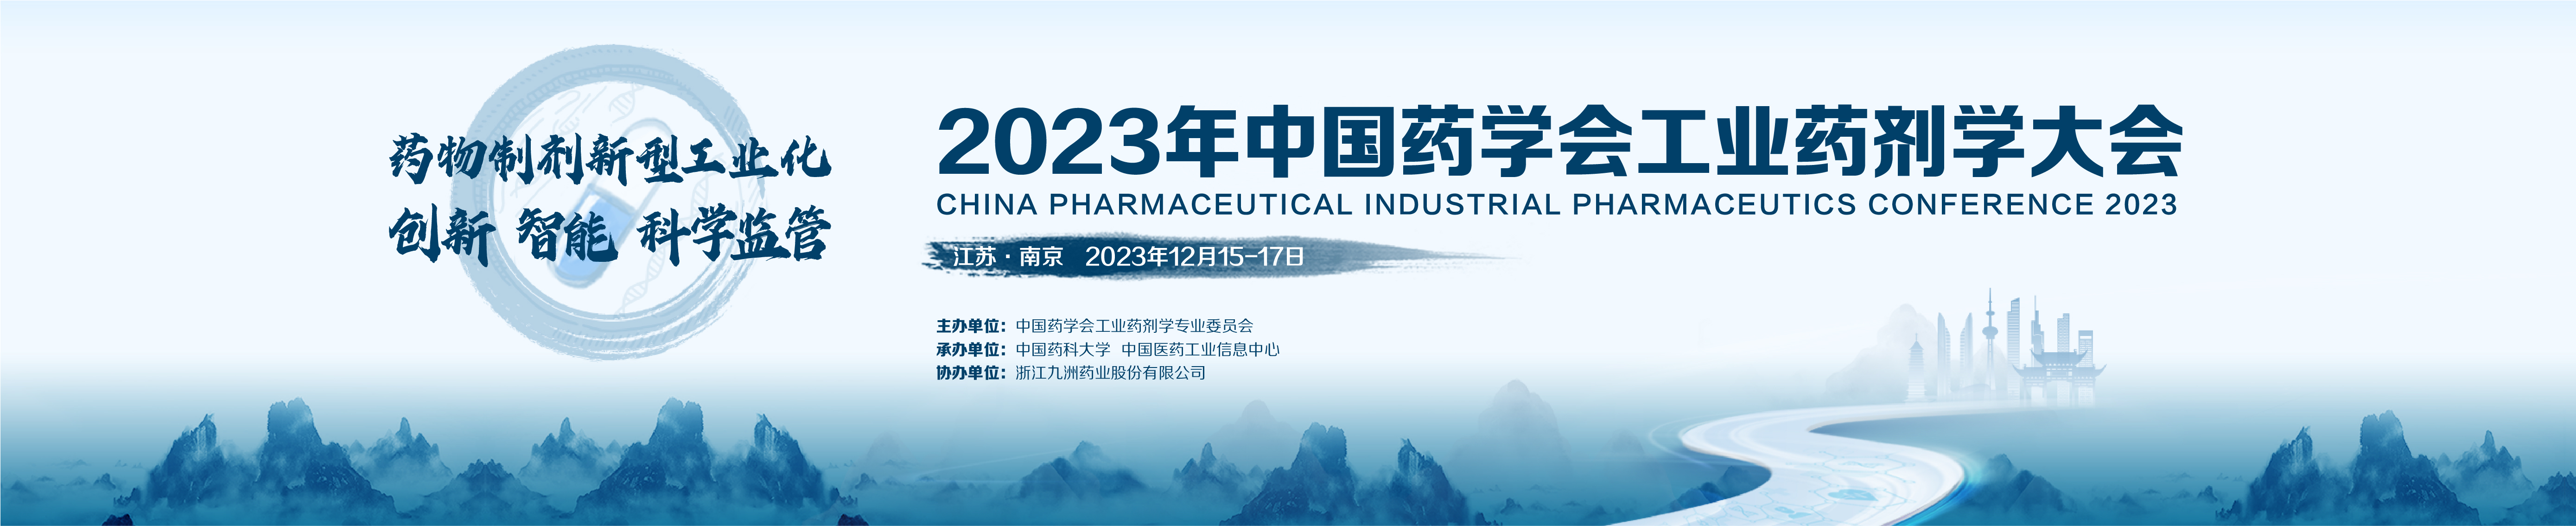 2023年中国药学会工业药剂学大会